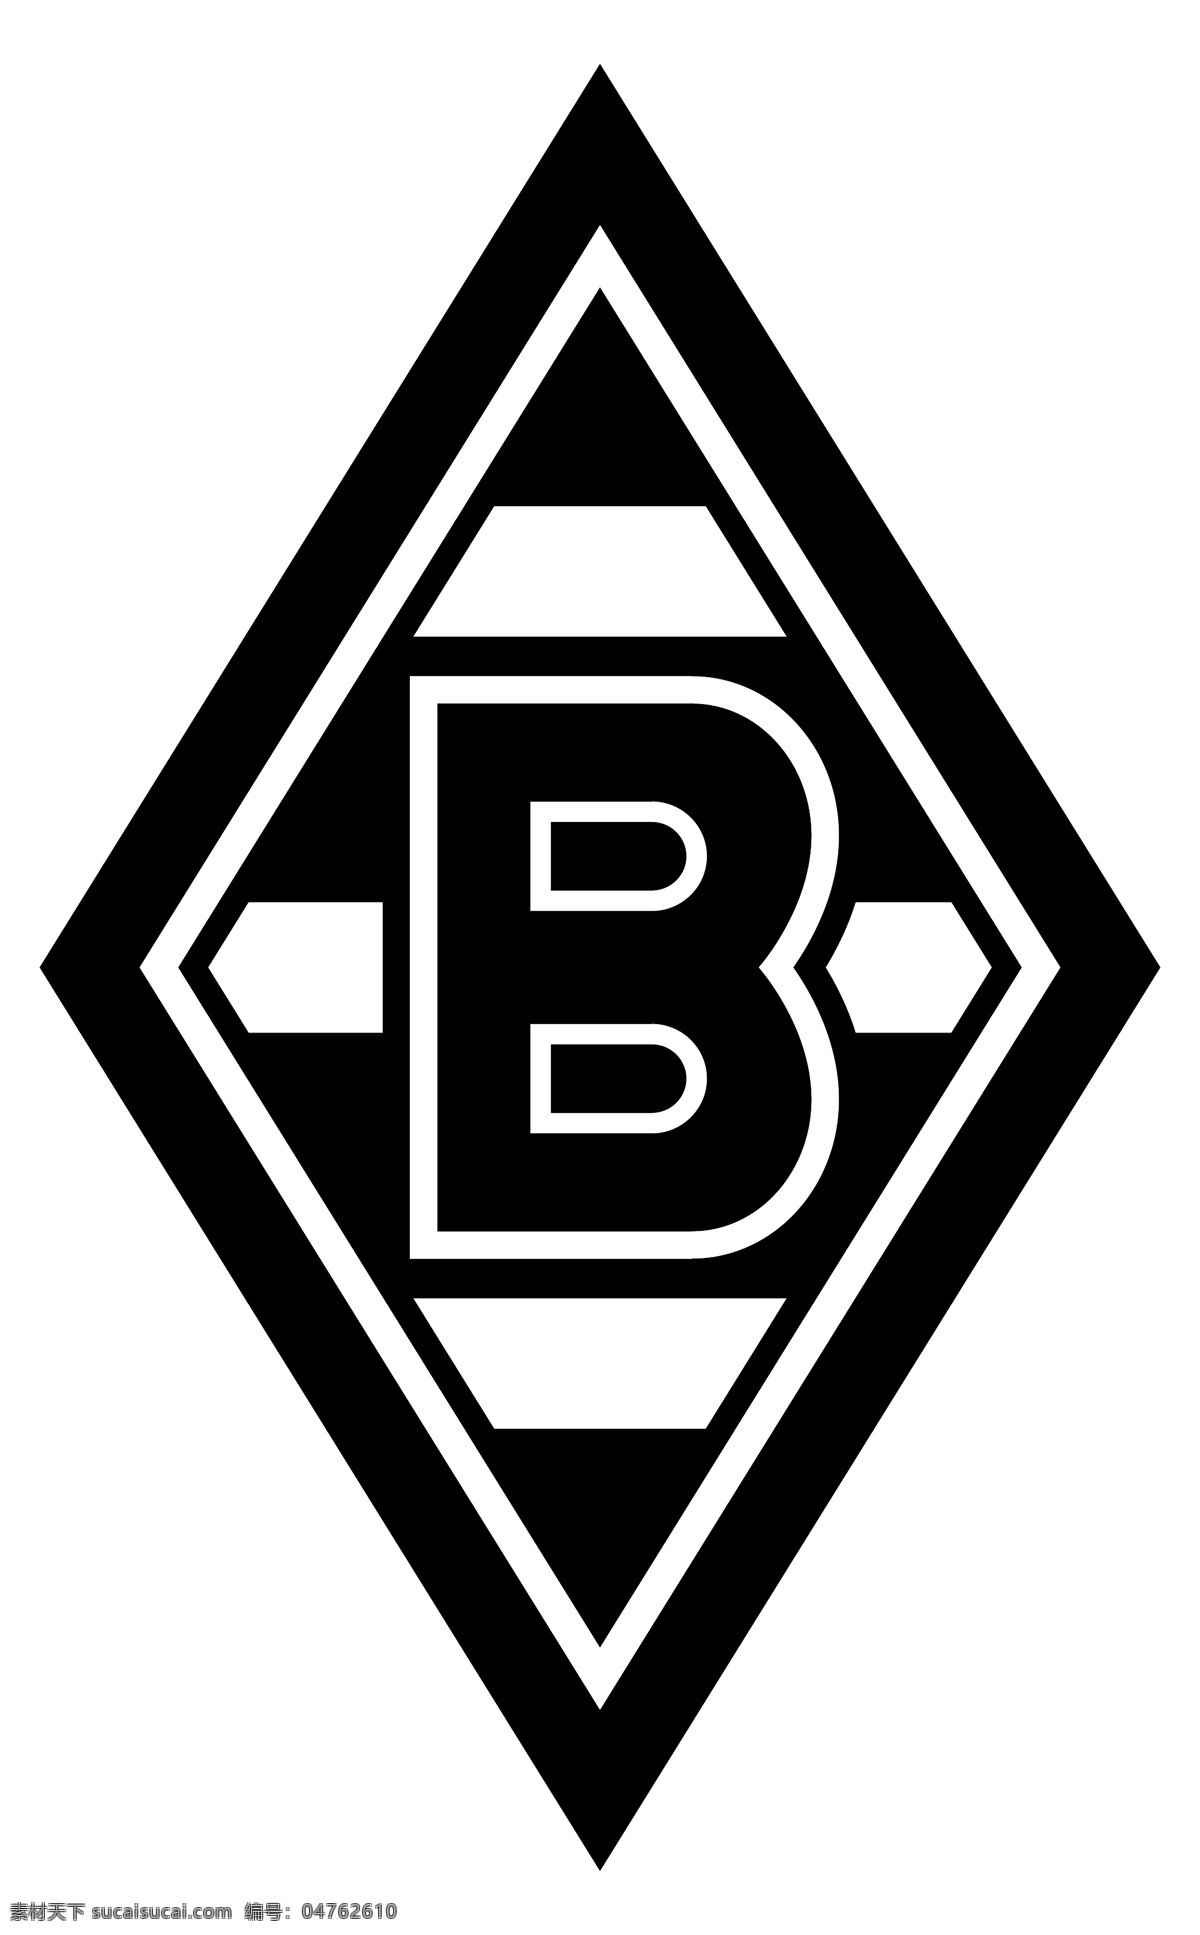 门 兴 格拉德 巴赫 足球 俱乐部 徽标 logo设计 德国 门兴 格拉德巴赫 德甲 德国杯 超级杯 欧冠 欧联 欧足联 联赛 杯赛 矢量图